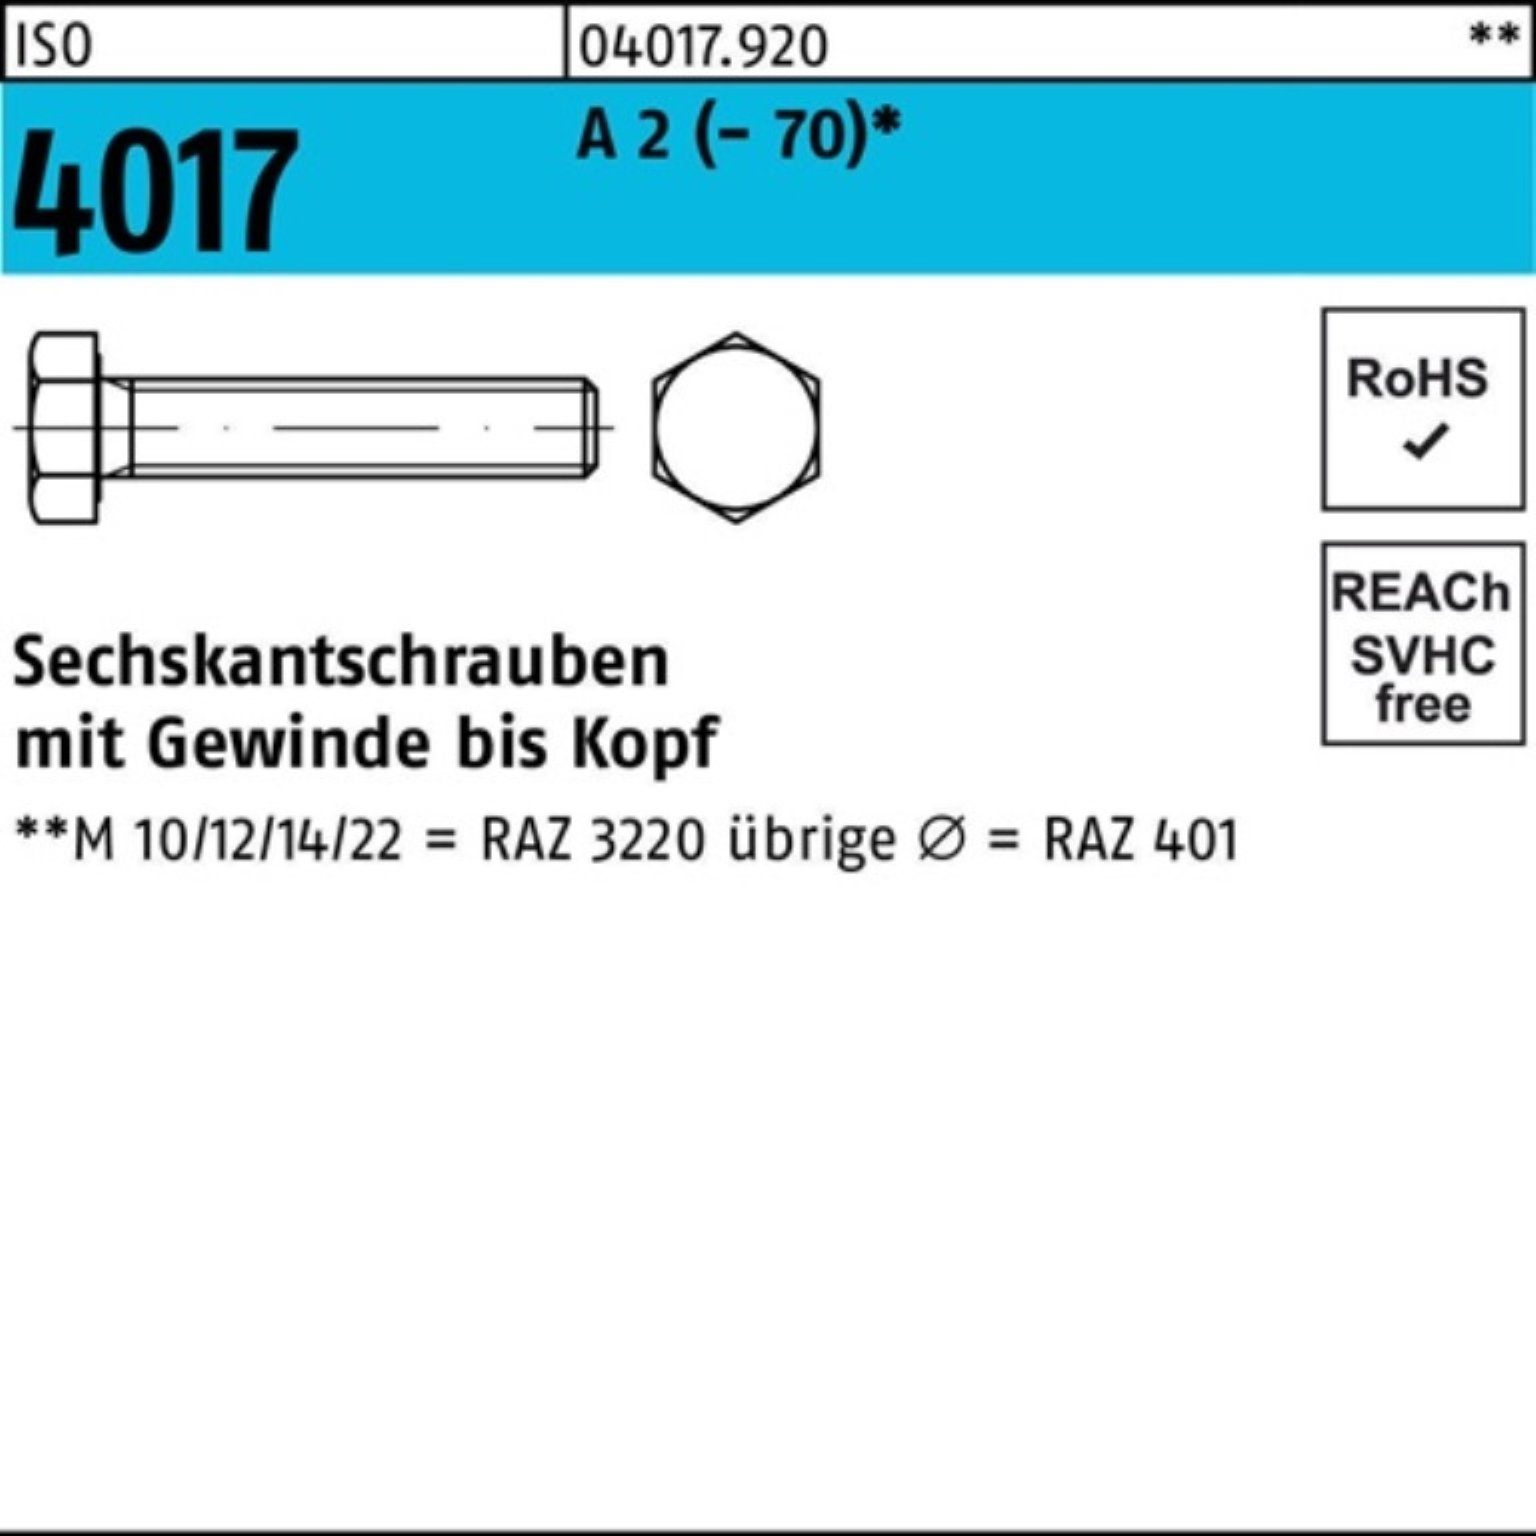 Bufab Sechskantschraube 100er M12x (70) 60 2 4017 Pack A Stück 50 ISO VG Sechskantschraube